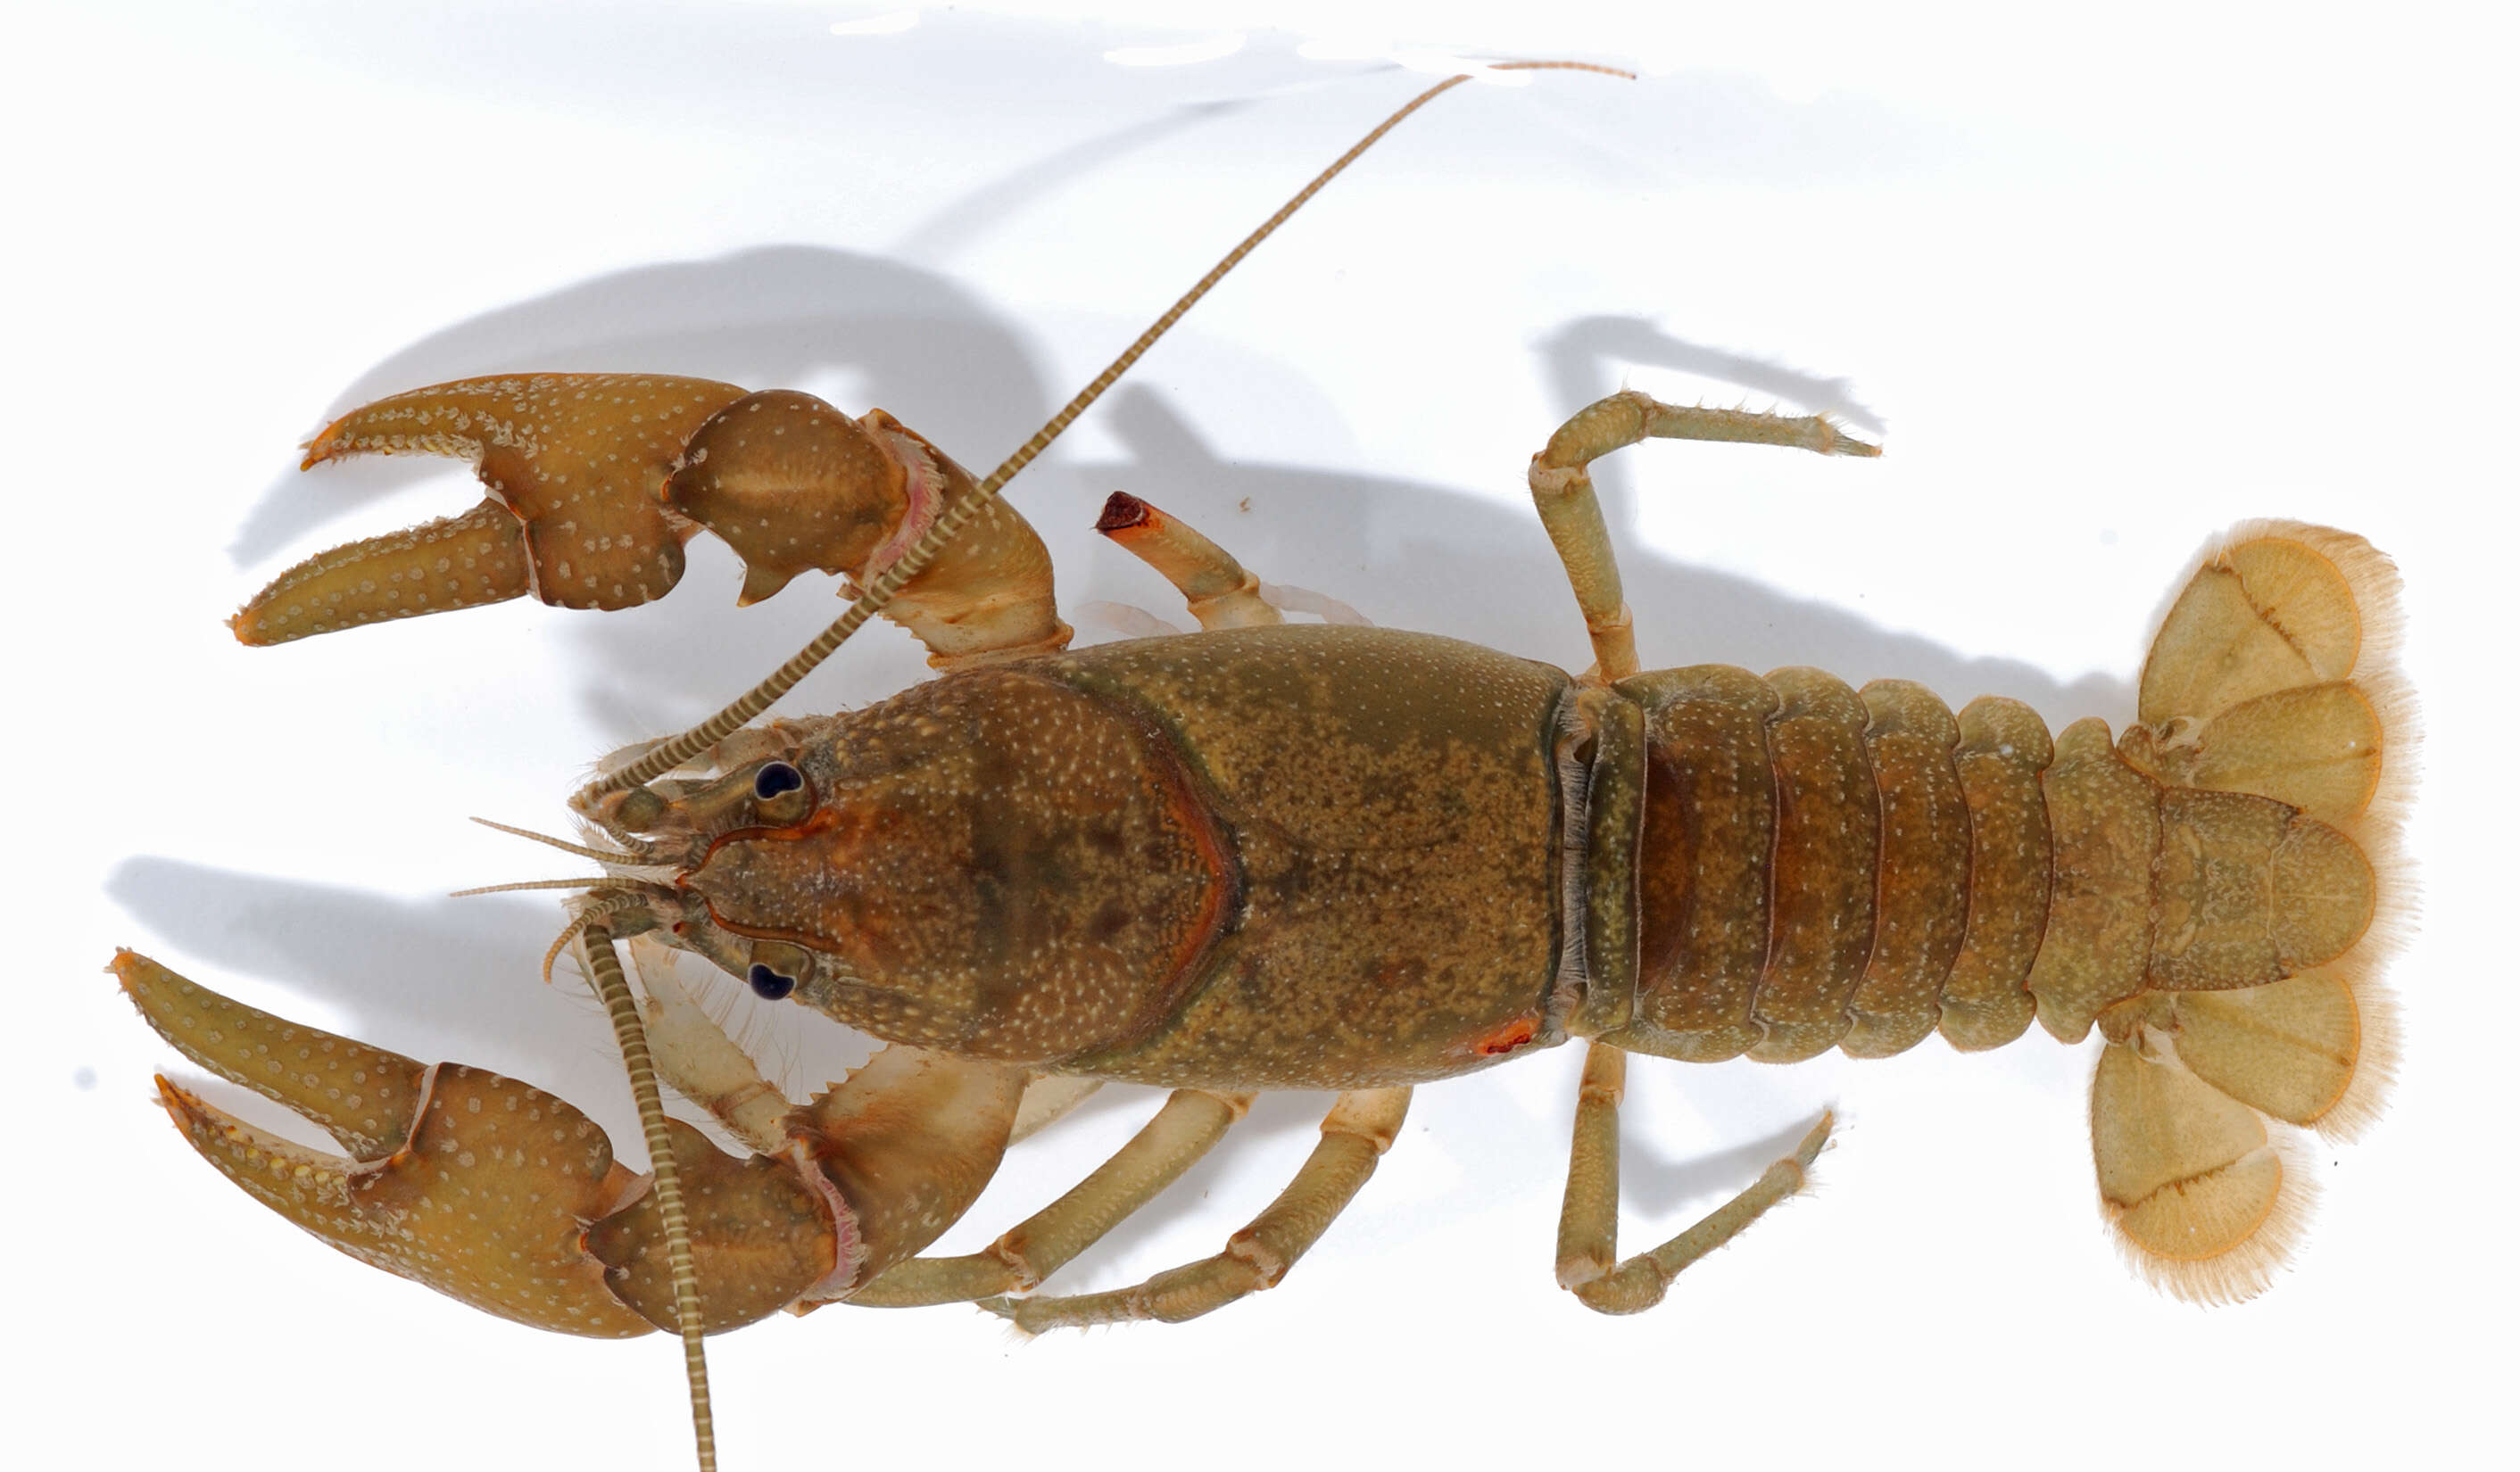 Image of Appalachian brook crayfish